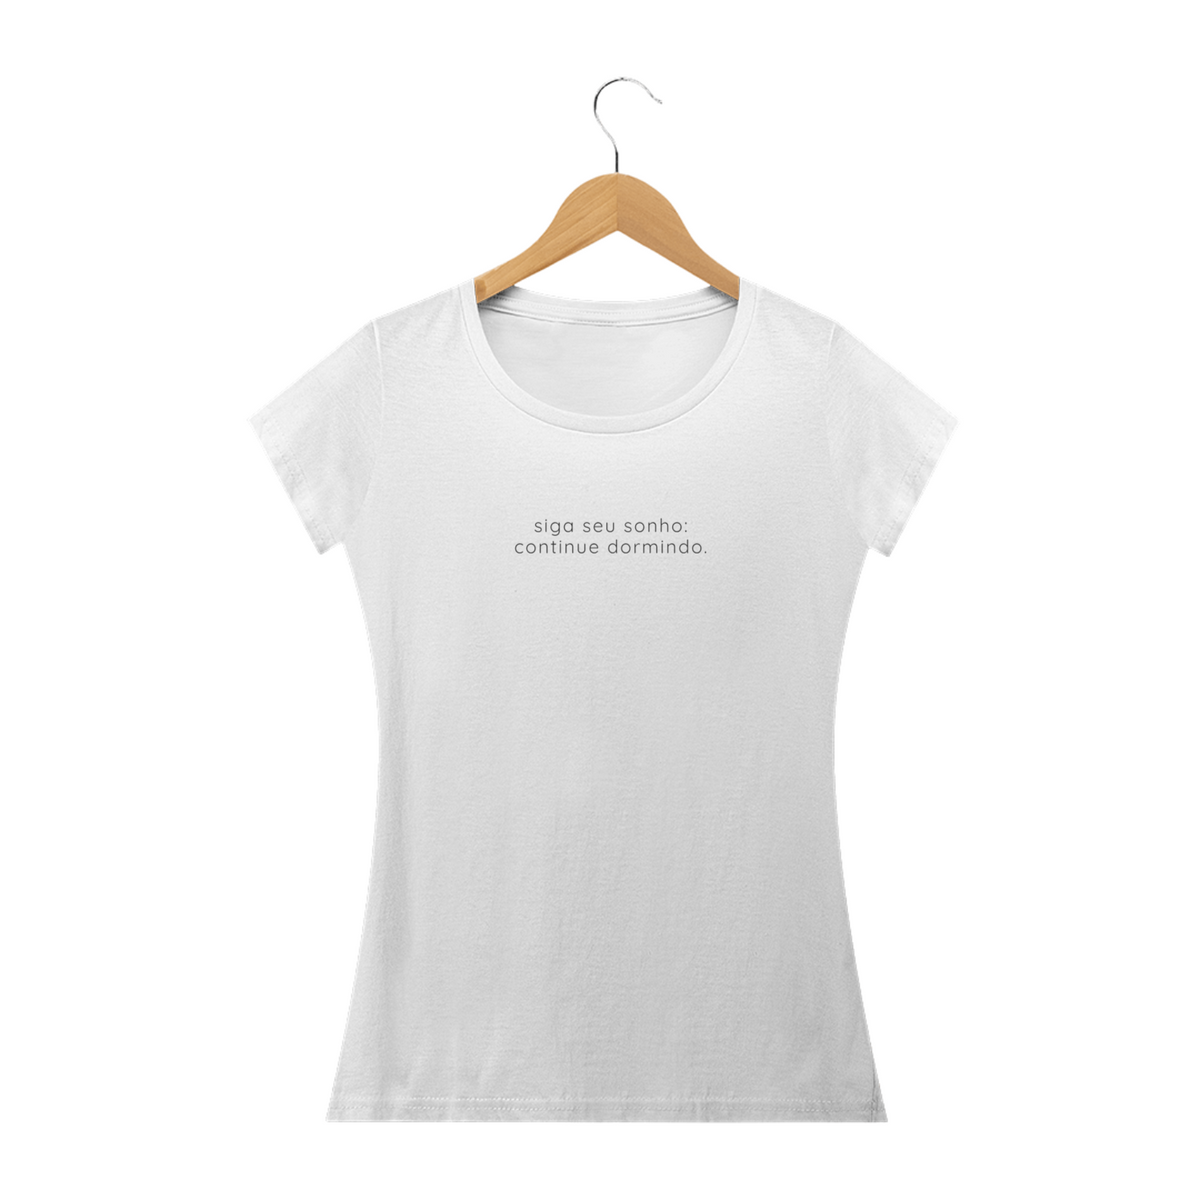 Nome do produto: Camiseta Baby Look Premium | Siga seu sonho, continue dormindo - Frazziei